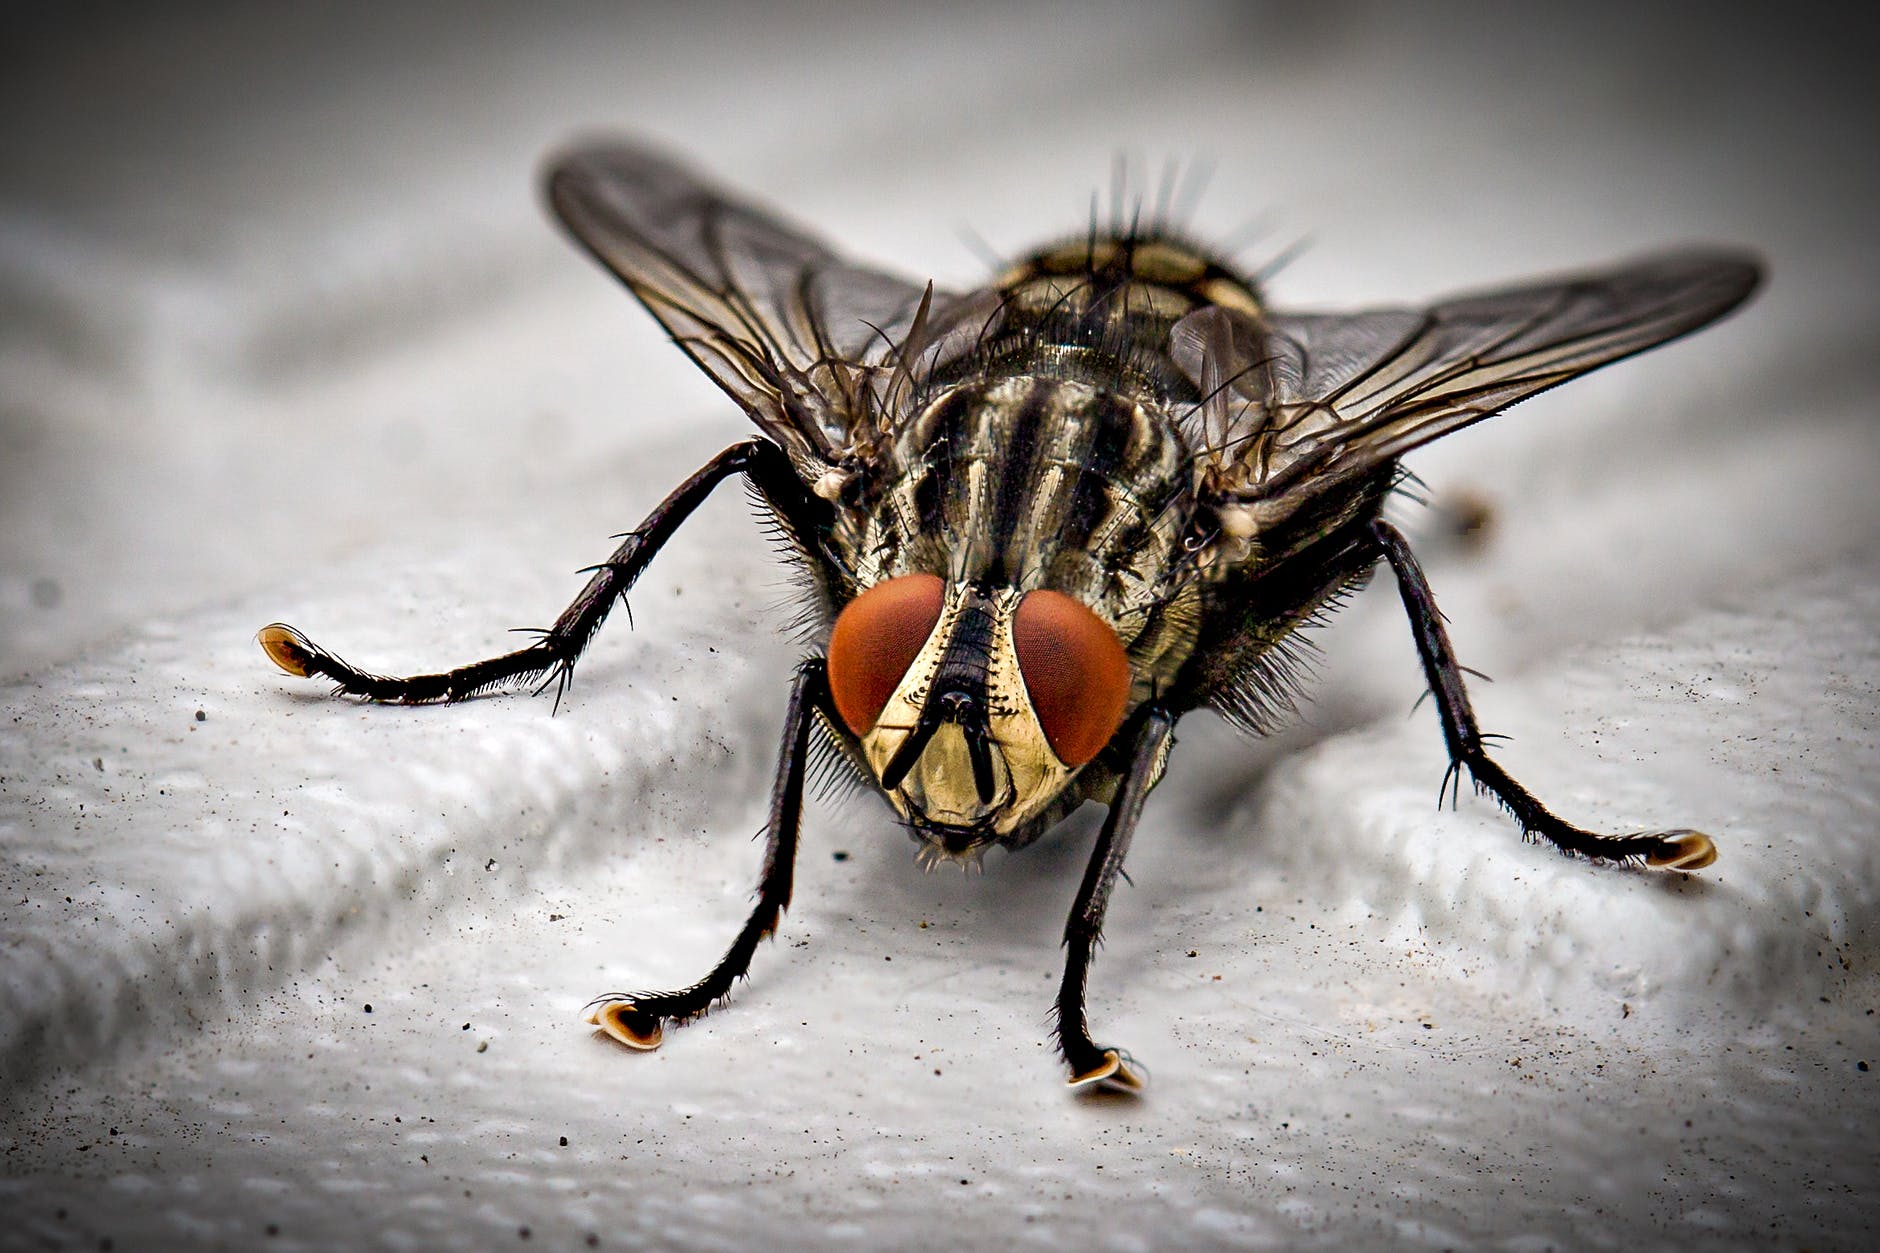 Aprenda a espantar moscas da sua casa com métodos naturais e eficazes